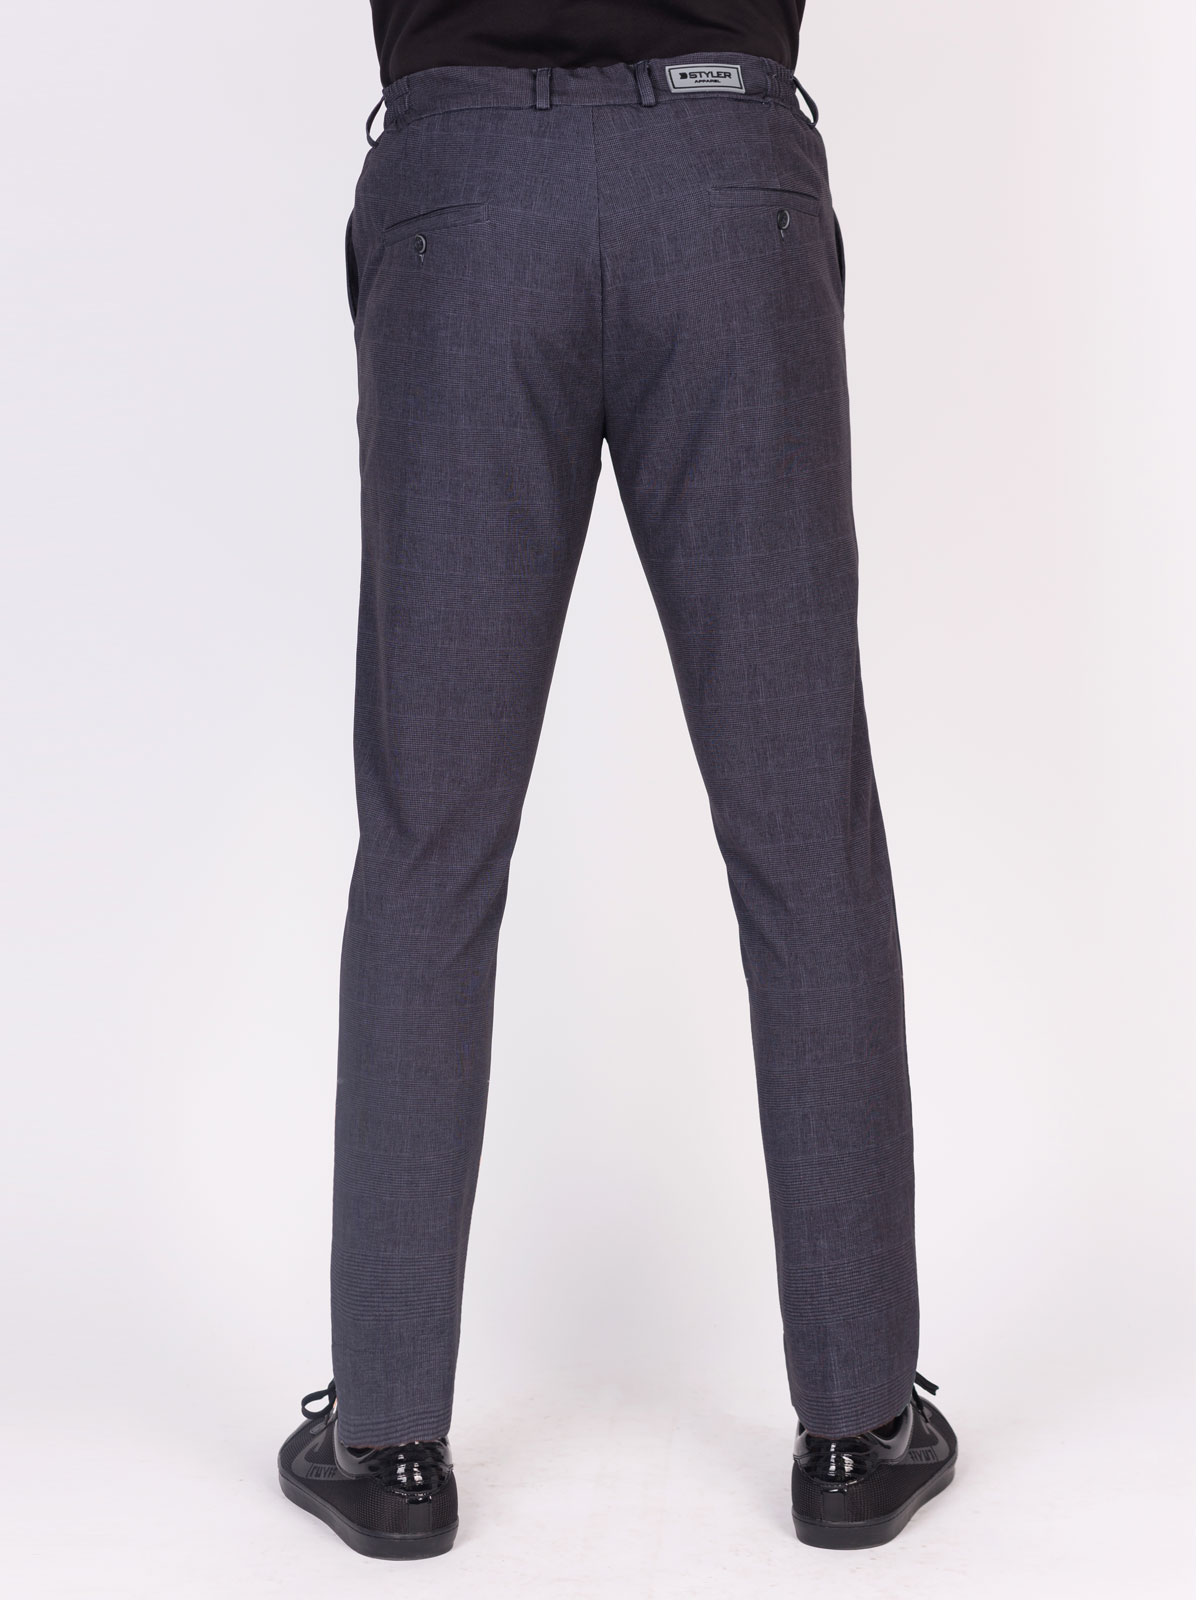 Mens trousers in dark gray - 29007 € 55.12 img2